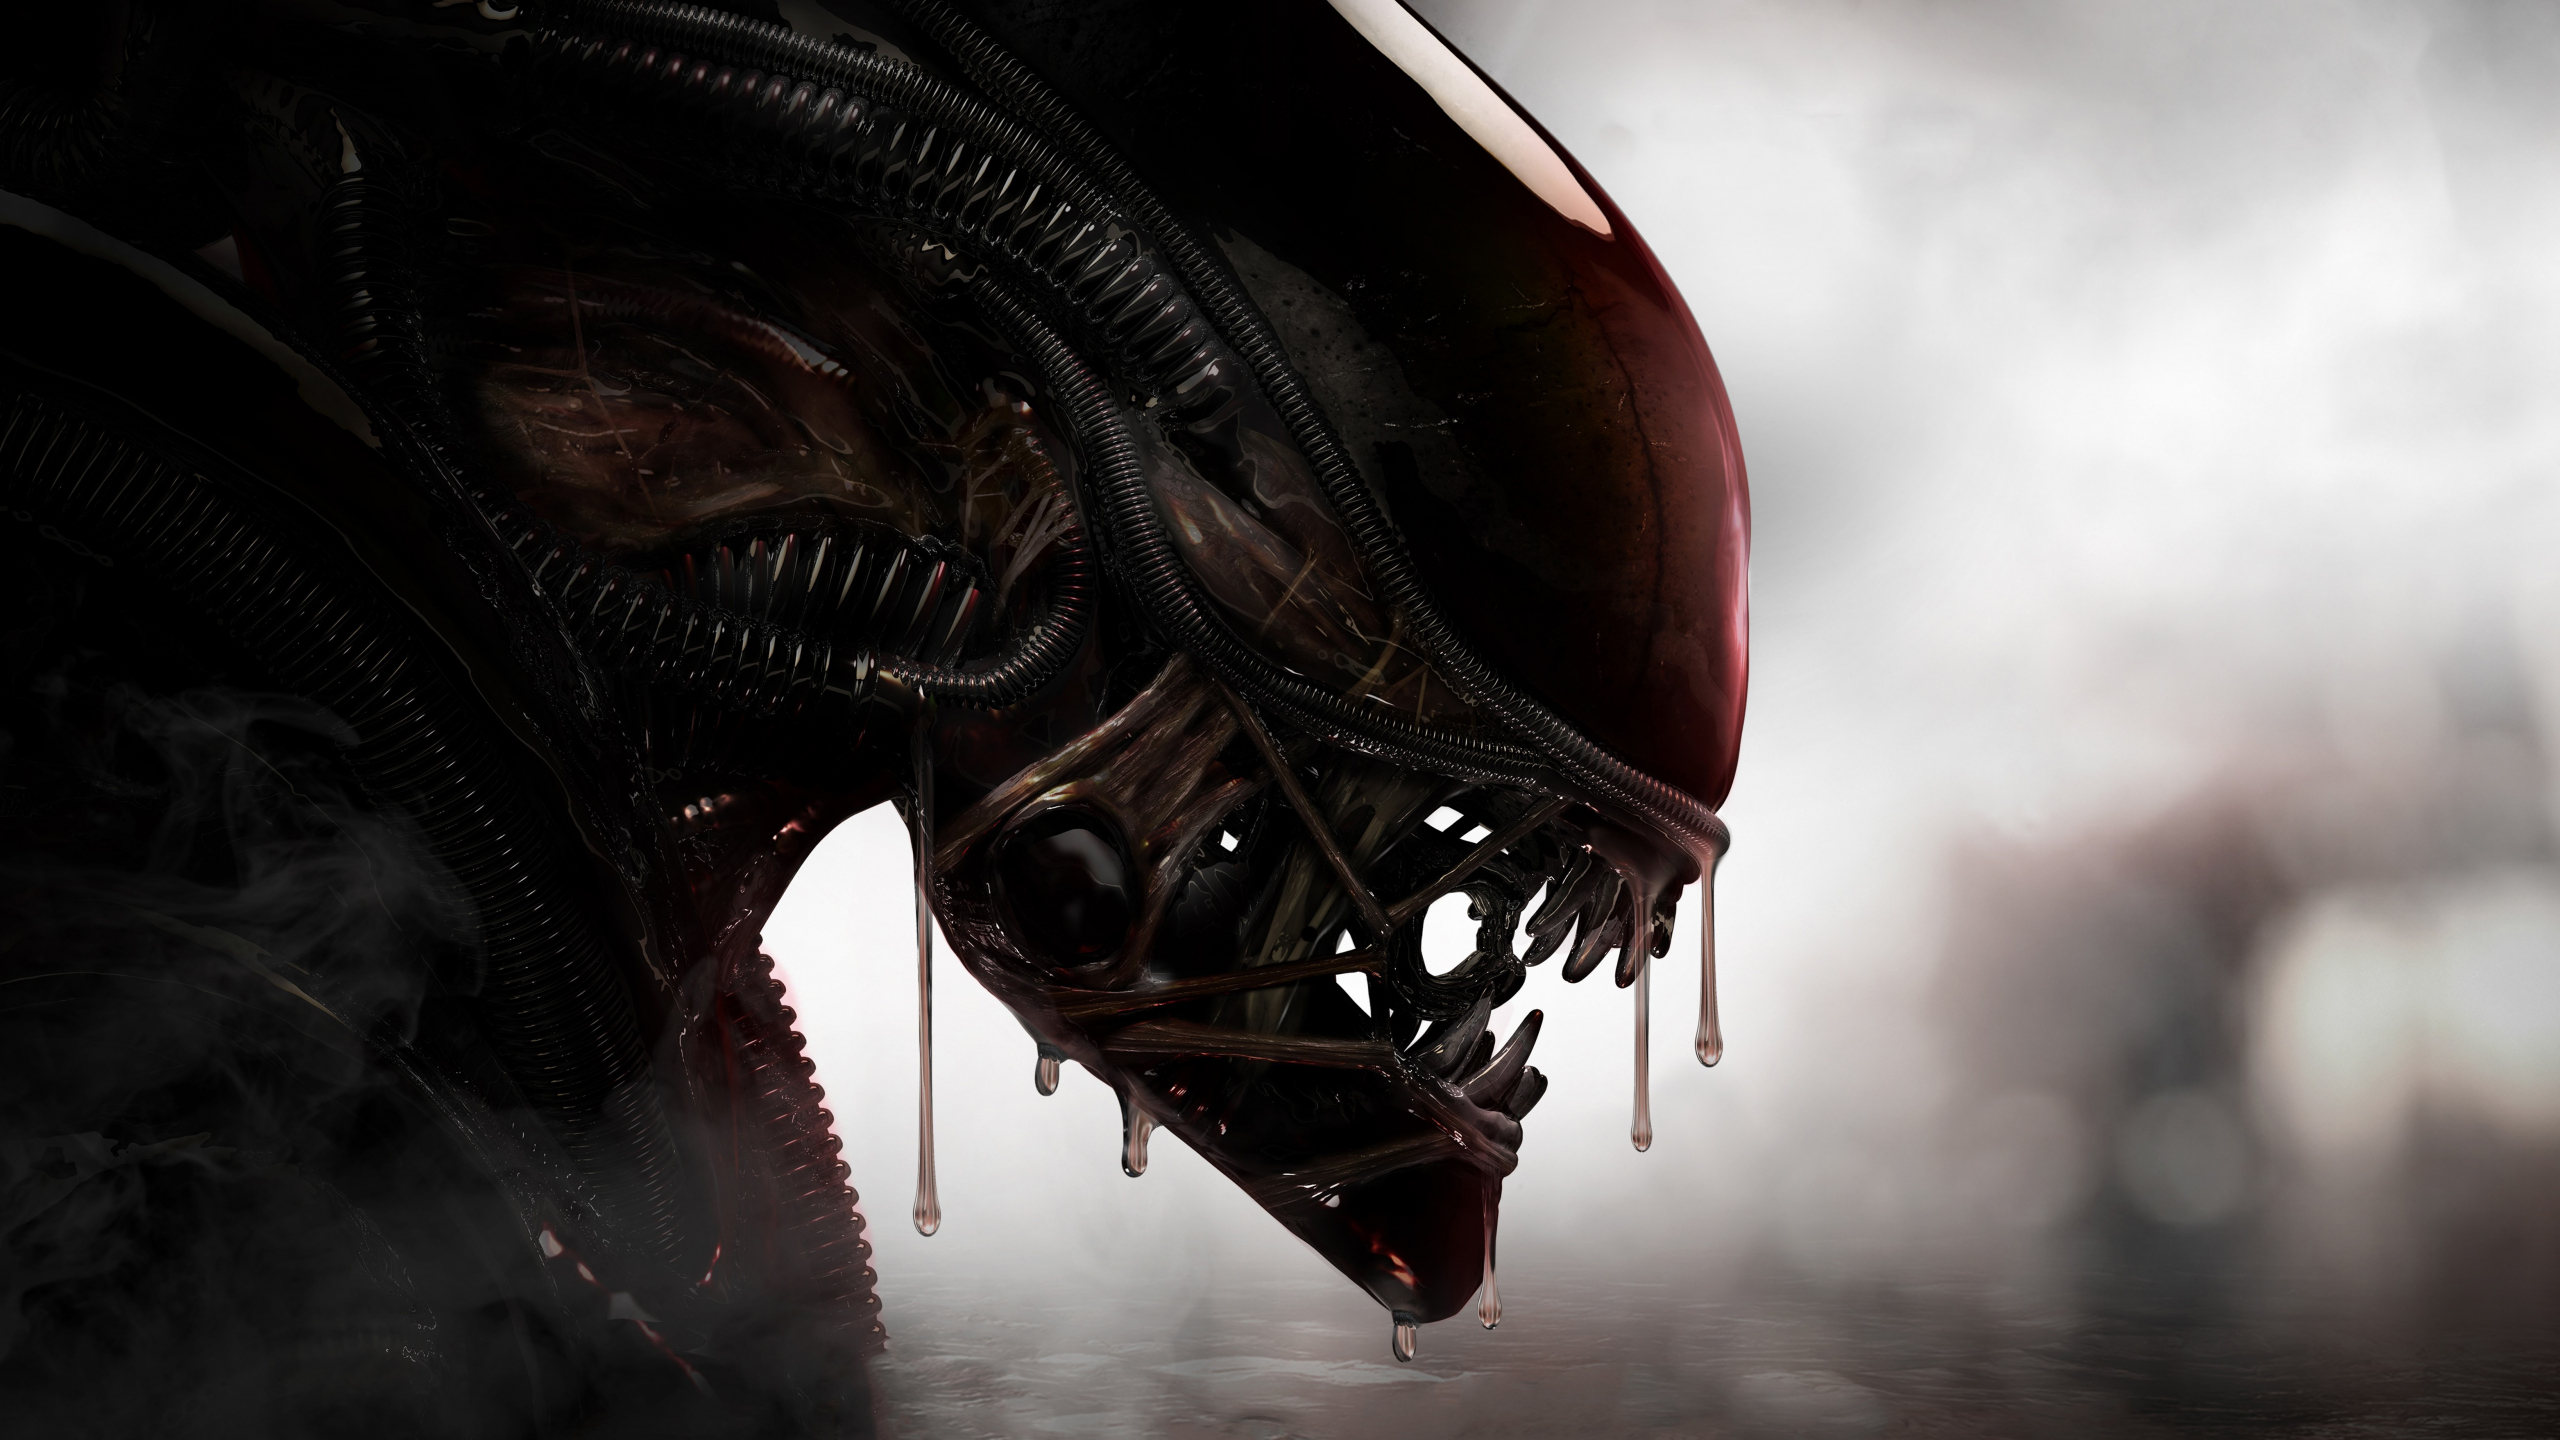 Download Predator Versus Alien Wallpaper